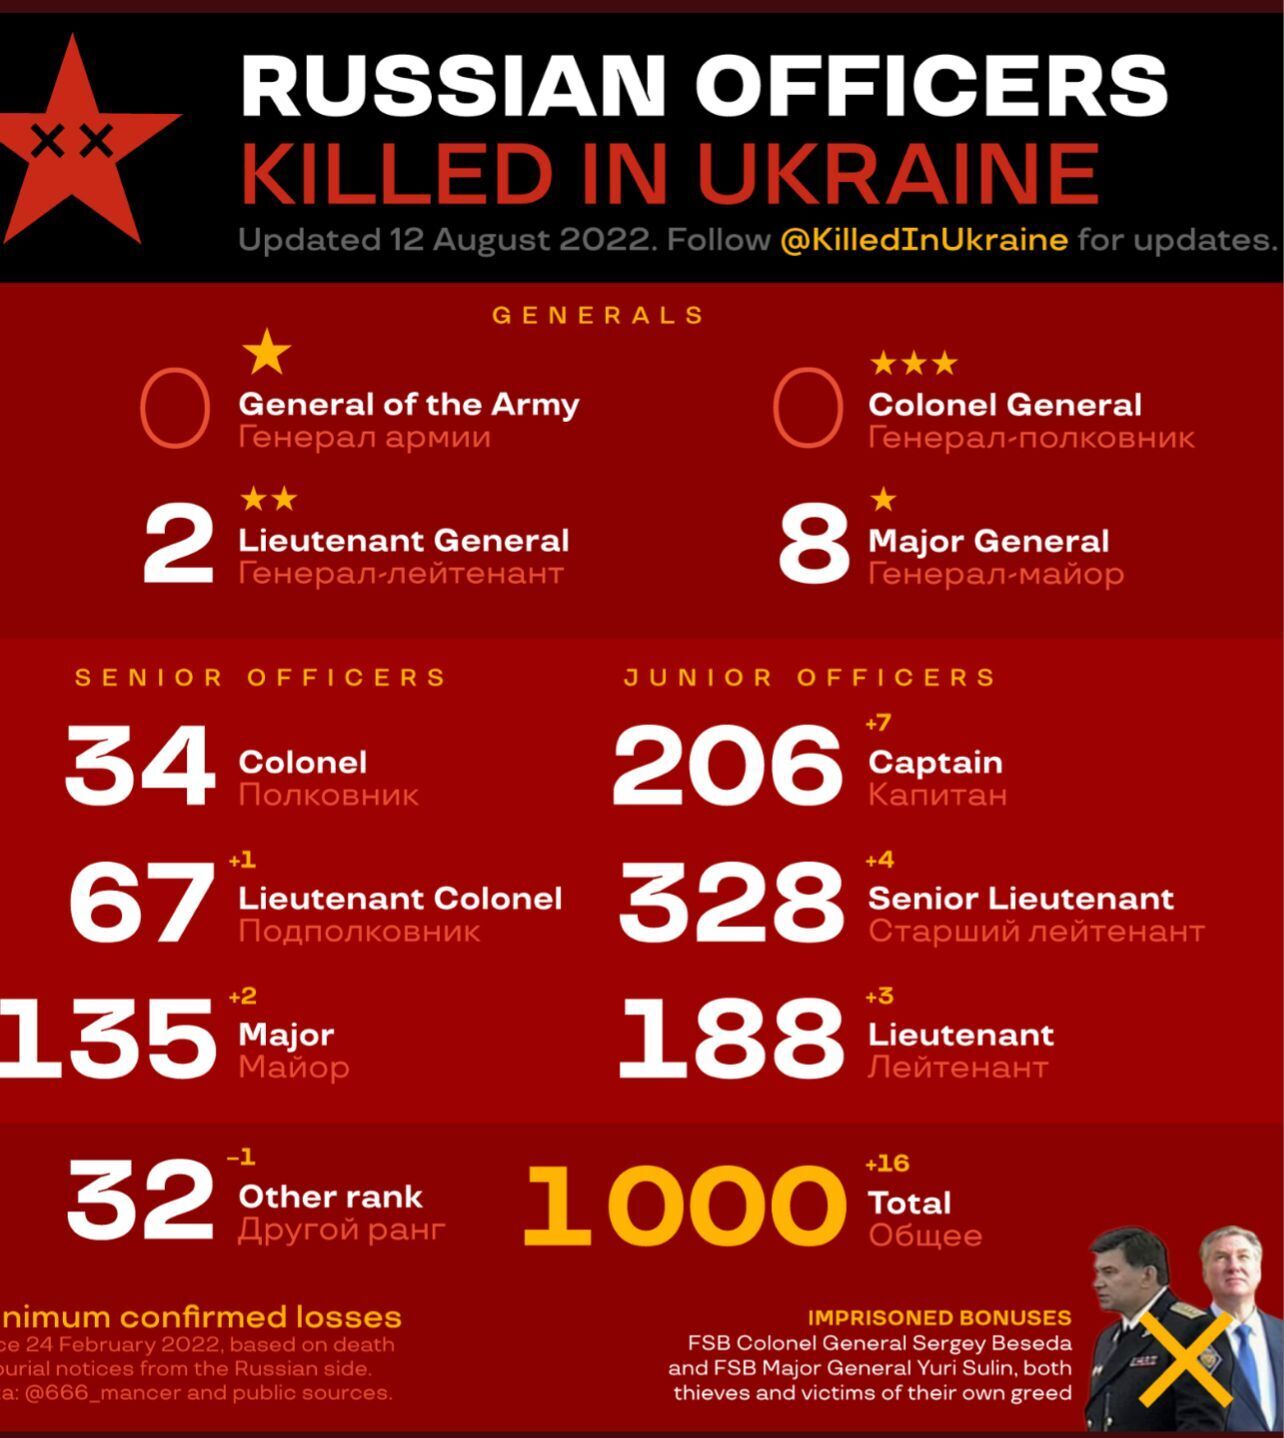 Автори проєкту Killed in Ukraine назвали цифру ліквідованих російських генералів та офіцерів